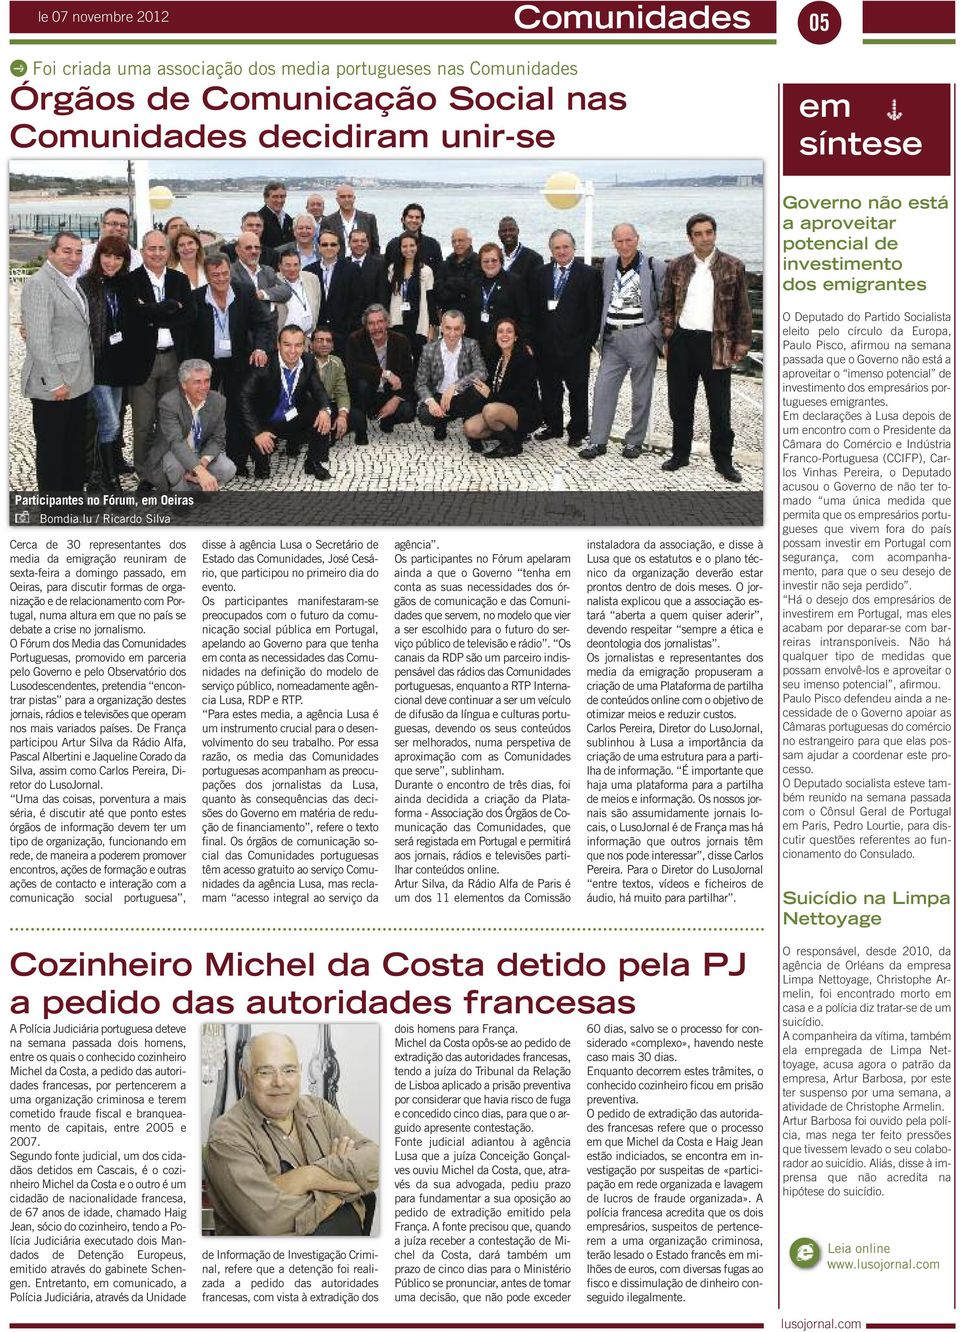 lu / Ricardo Silva Cerca de 30 representantes dos media da emigração reuniram de sexta-feira a domingo passado, em Oeiras, para discutir formas de organização e de relacionamento com Portugal, numa